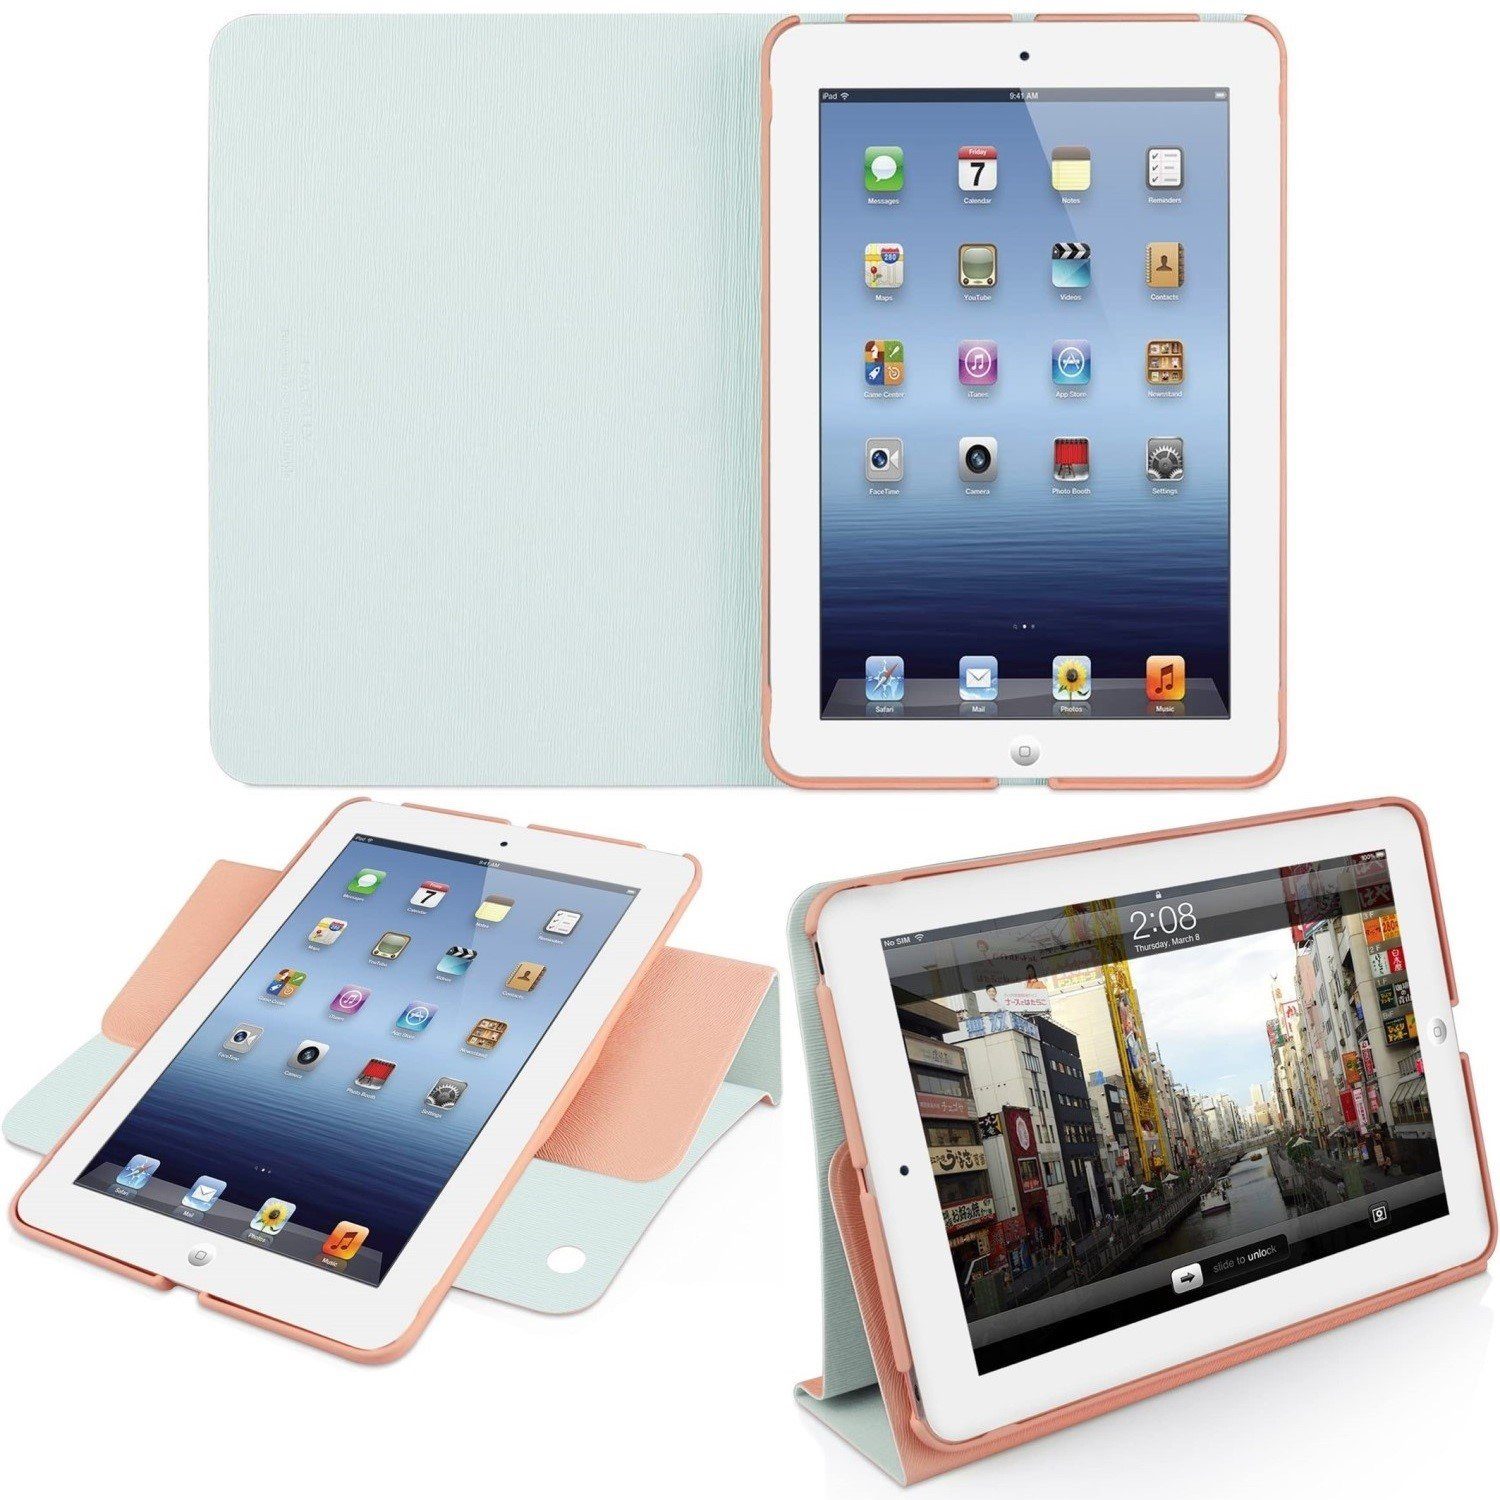 Macally Tablet-Hülle Klapp-Tasche Cover Ständer Schutz-Hülle Rosa, Smart  Folio passend für für Apple iPad mini 1 2 3 Generation, Stand-Funktion,  Magnet-Verschluss, leicht und flach, Ein-/Aus-Funktion